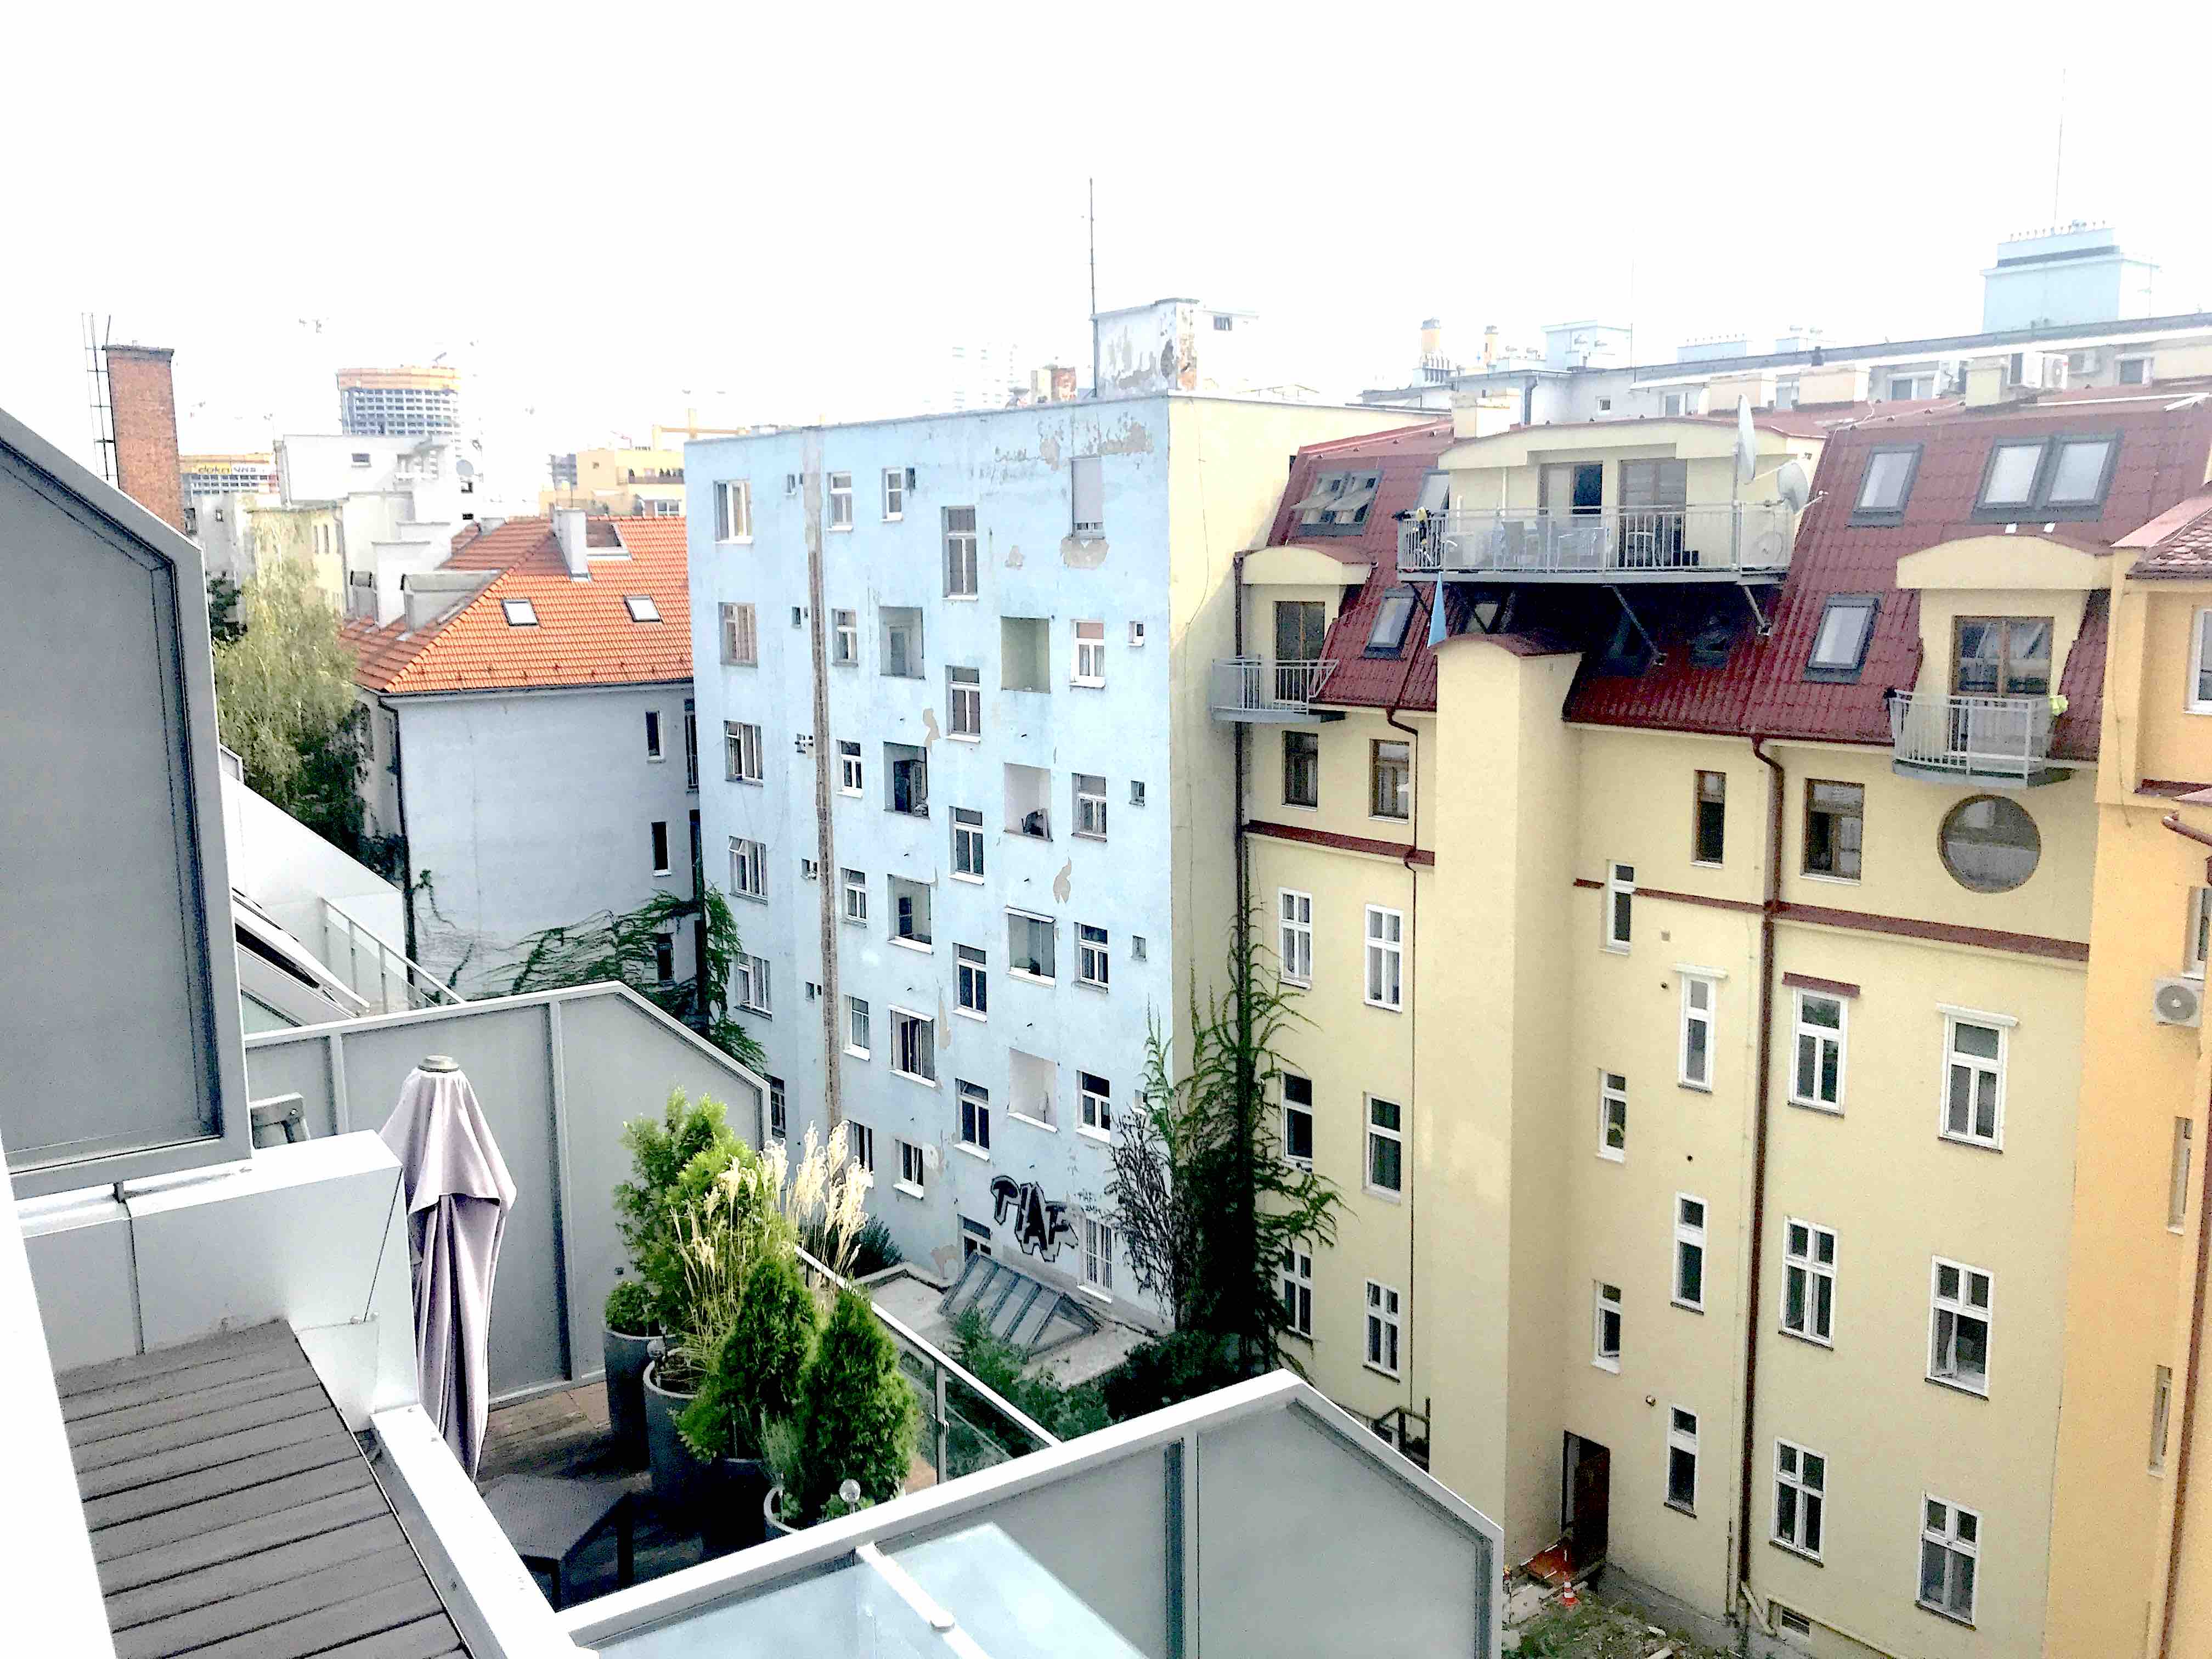 PRENÁJOM NOVOSTAVBA: kompletne zariadený 3-izbový byt s terasou, parkovanie, centrum mesta, Dunajská ul., Bratislava I. Staré Mesto